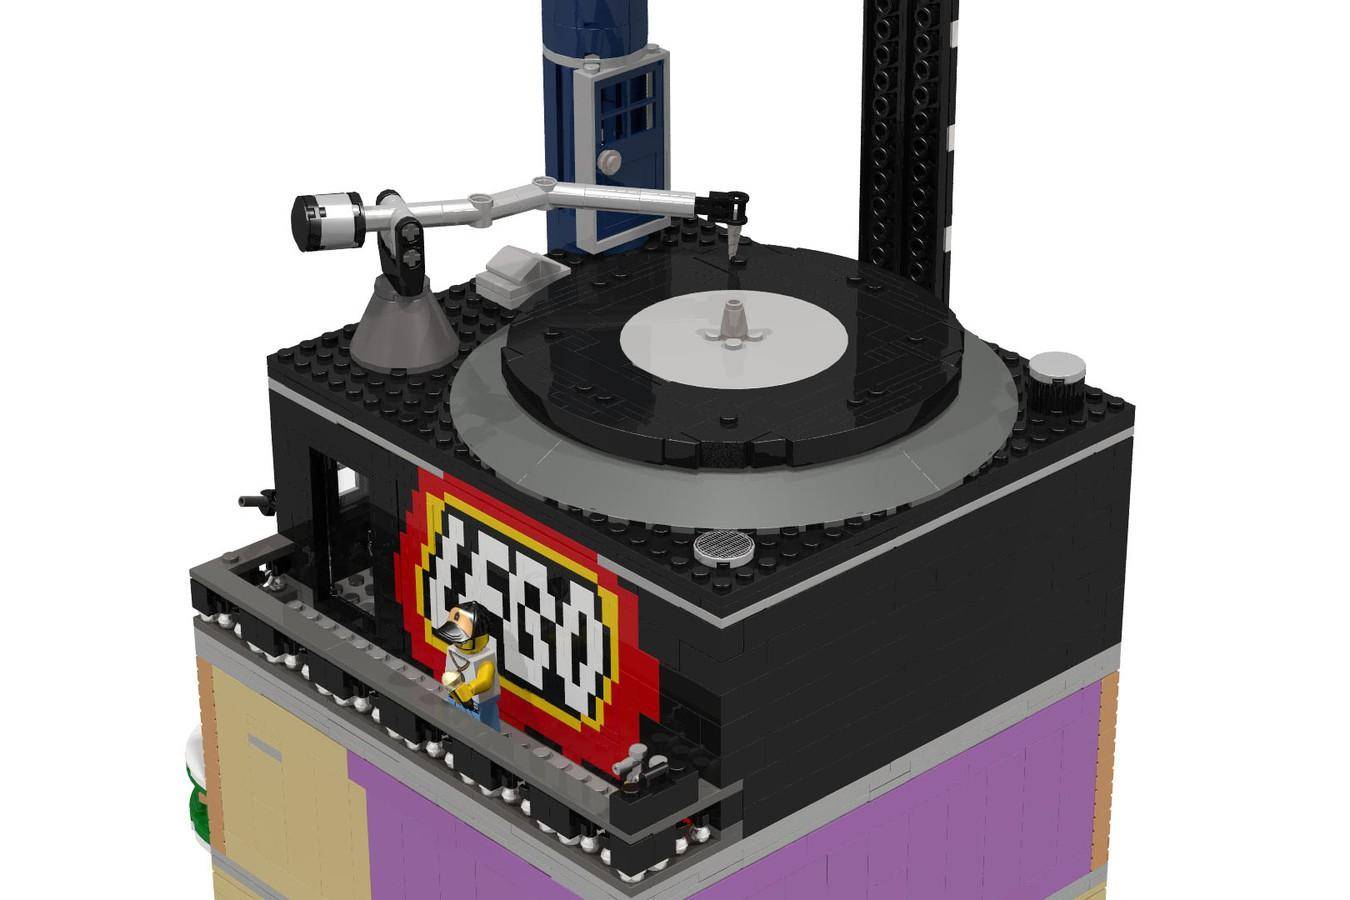 Rumor: ¡Lego tendrá sets dedicados a la música en 2021! 26